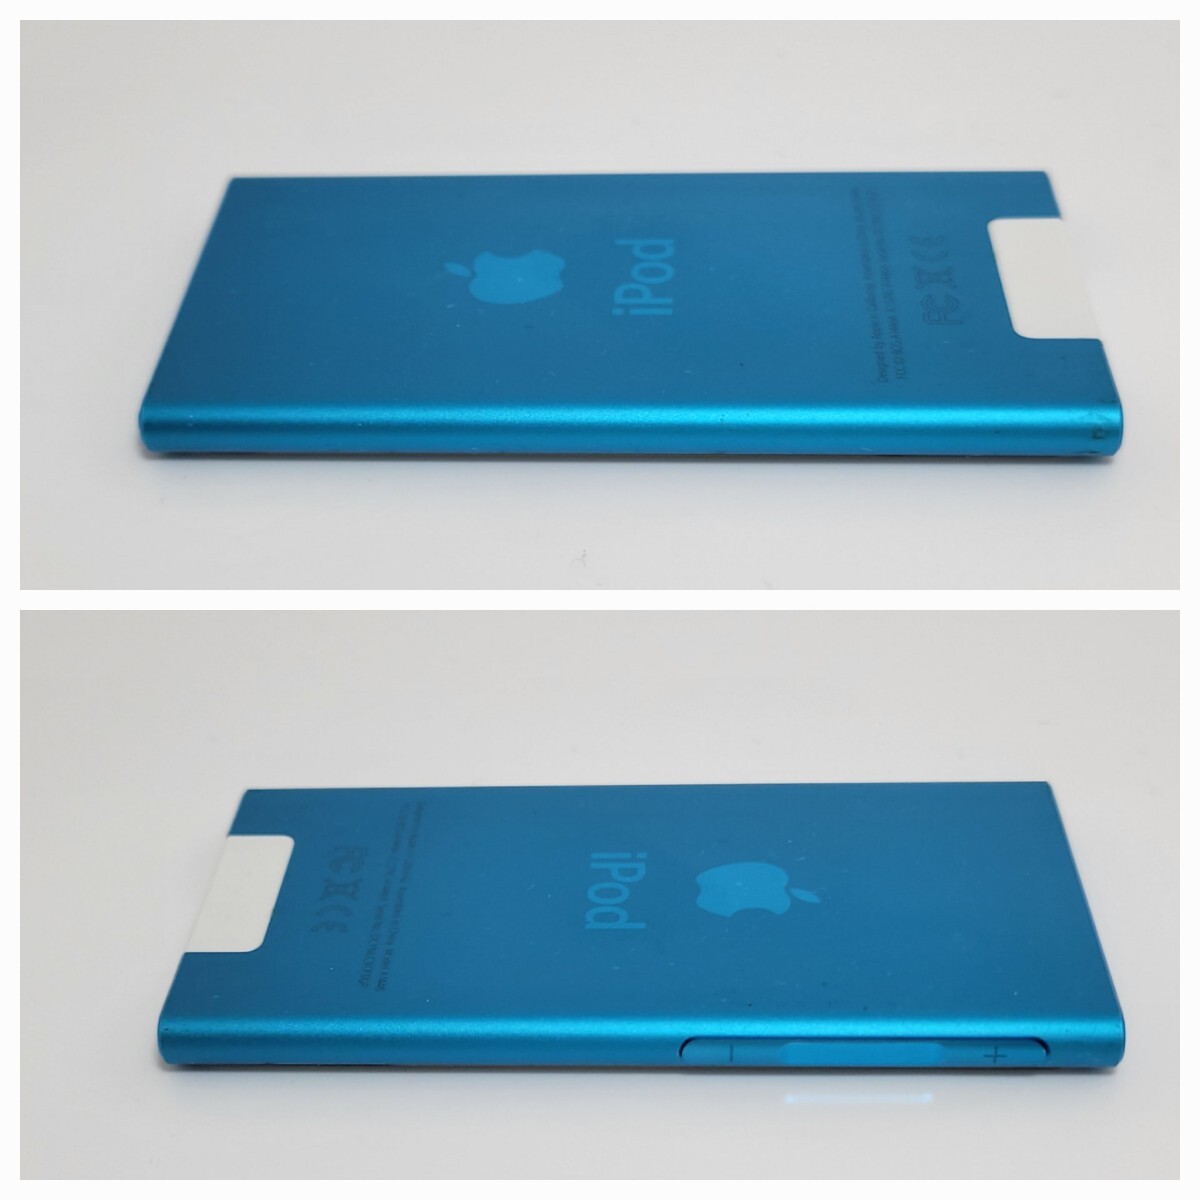 付属完備☆美品☆iPod nano 第7世代 16GB ブルー blue A1446 アイポッドナノ Apple 動作品 動作確認済み_画像6